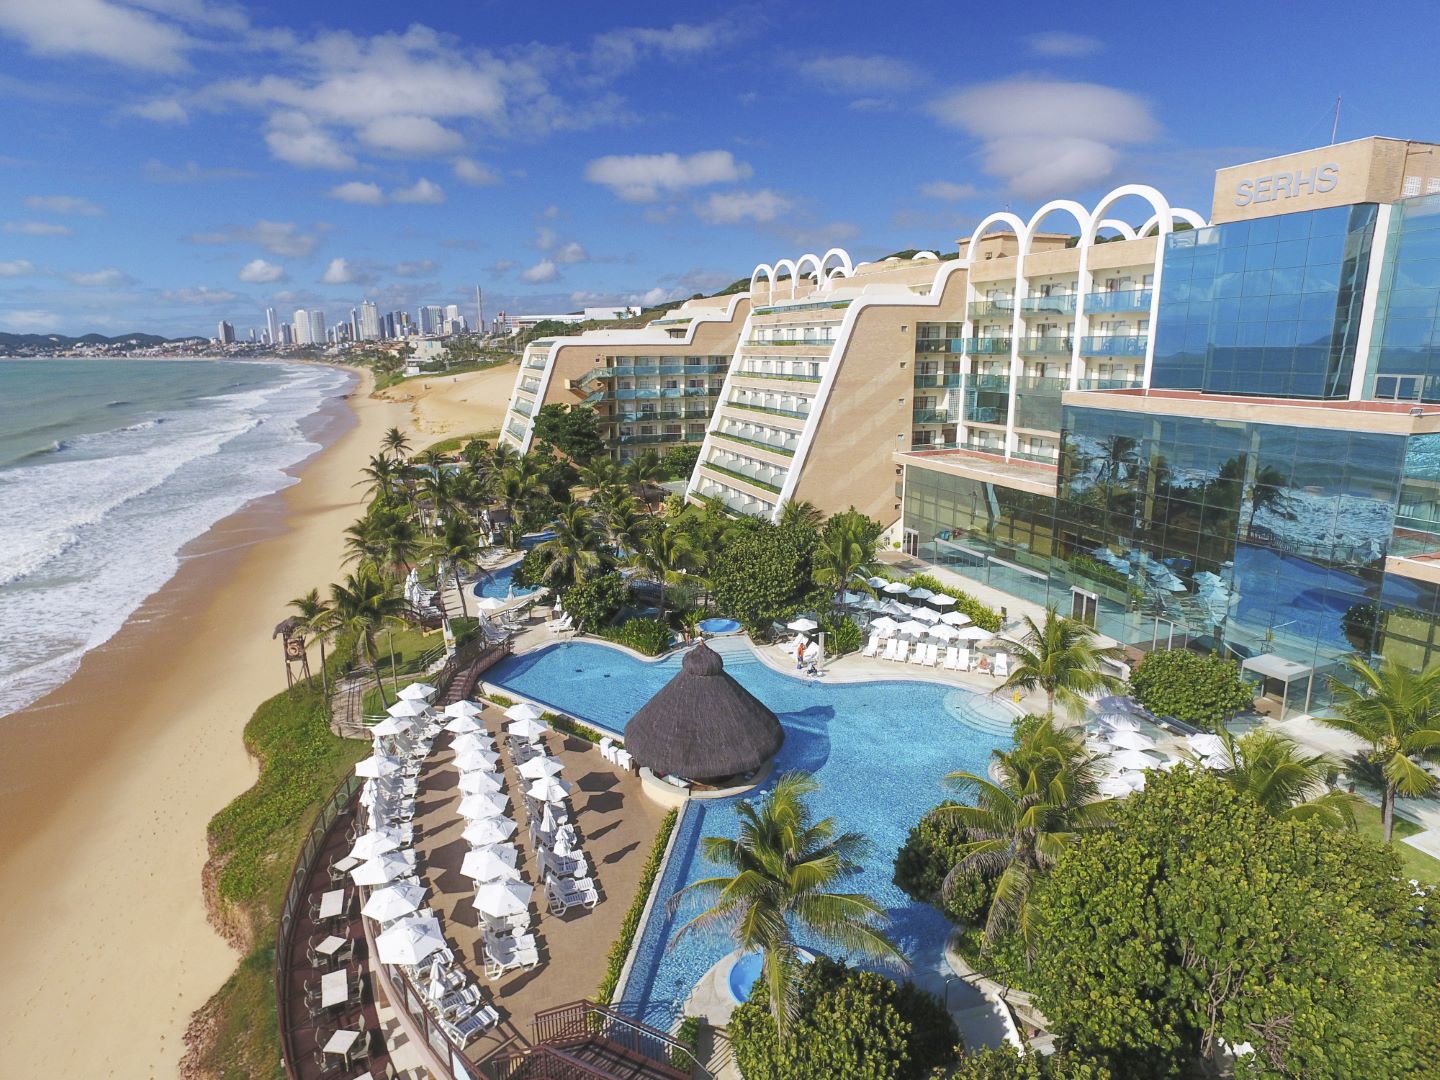 Melhores resorts de praia do Brasil em 18 quesitos